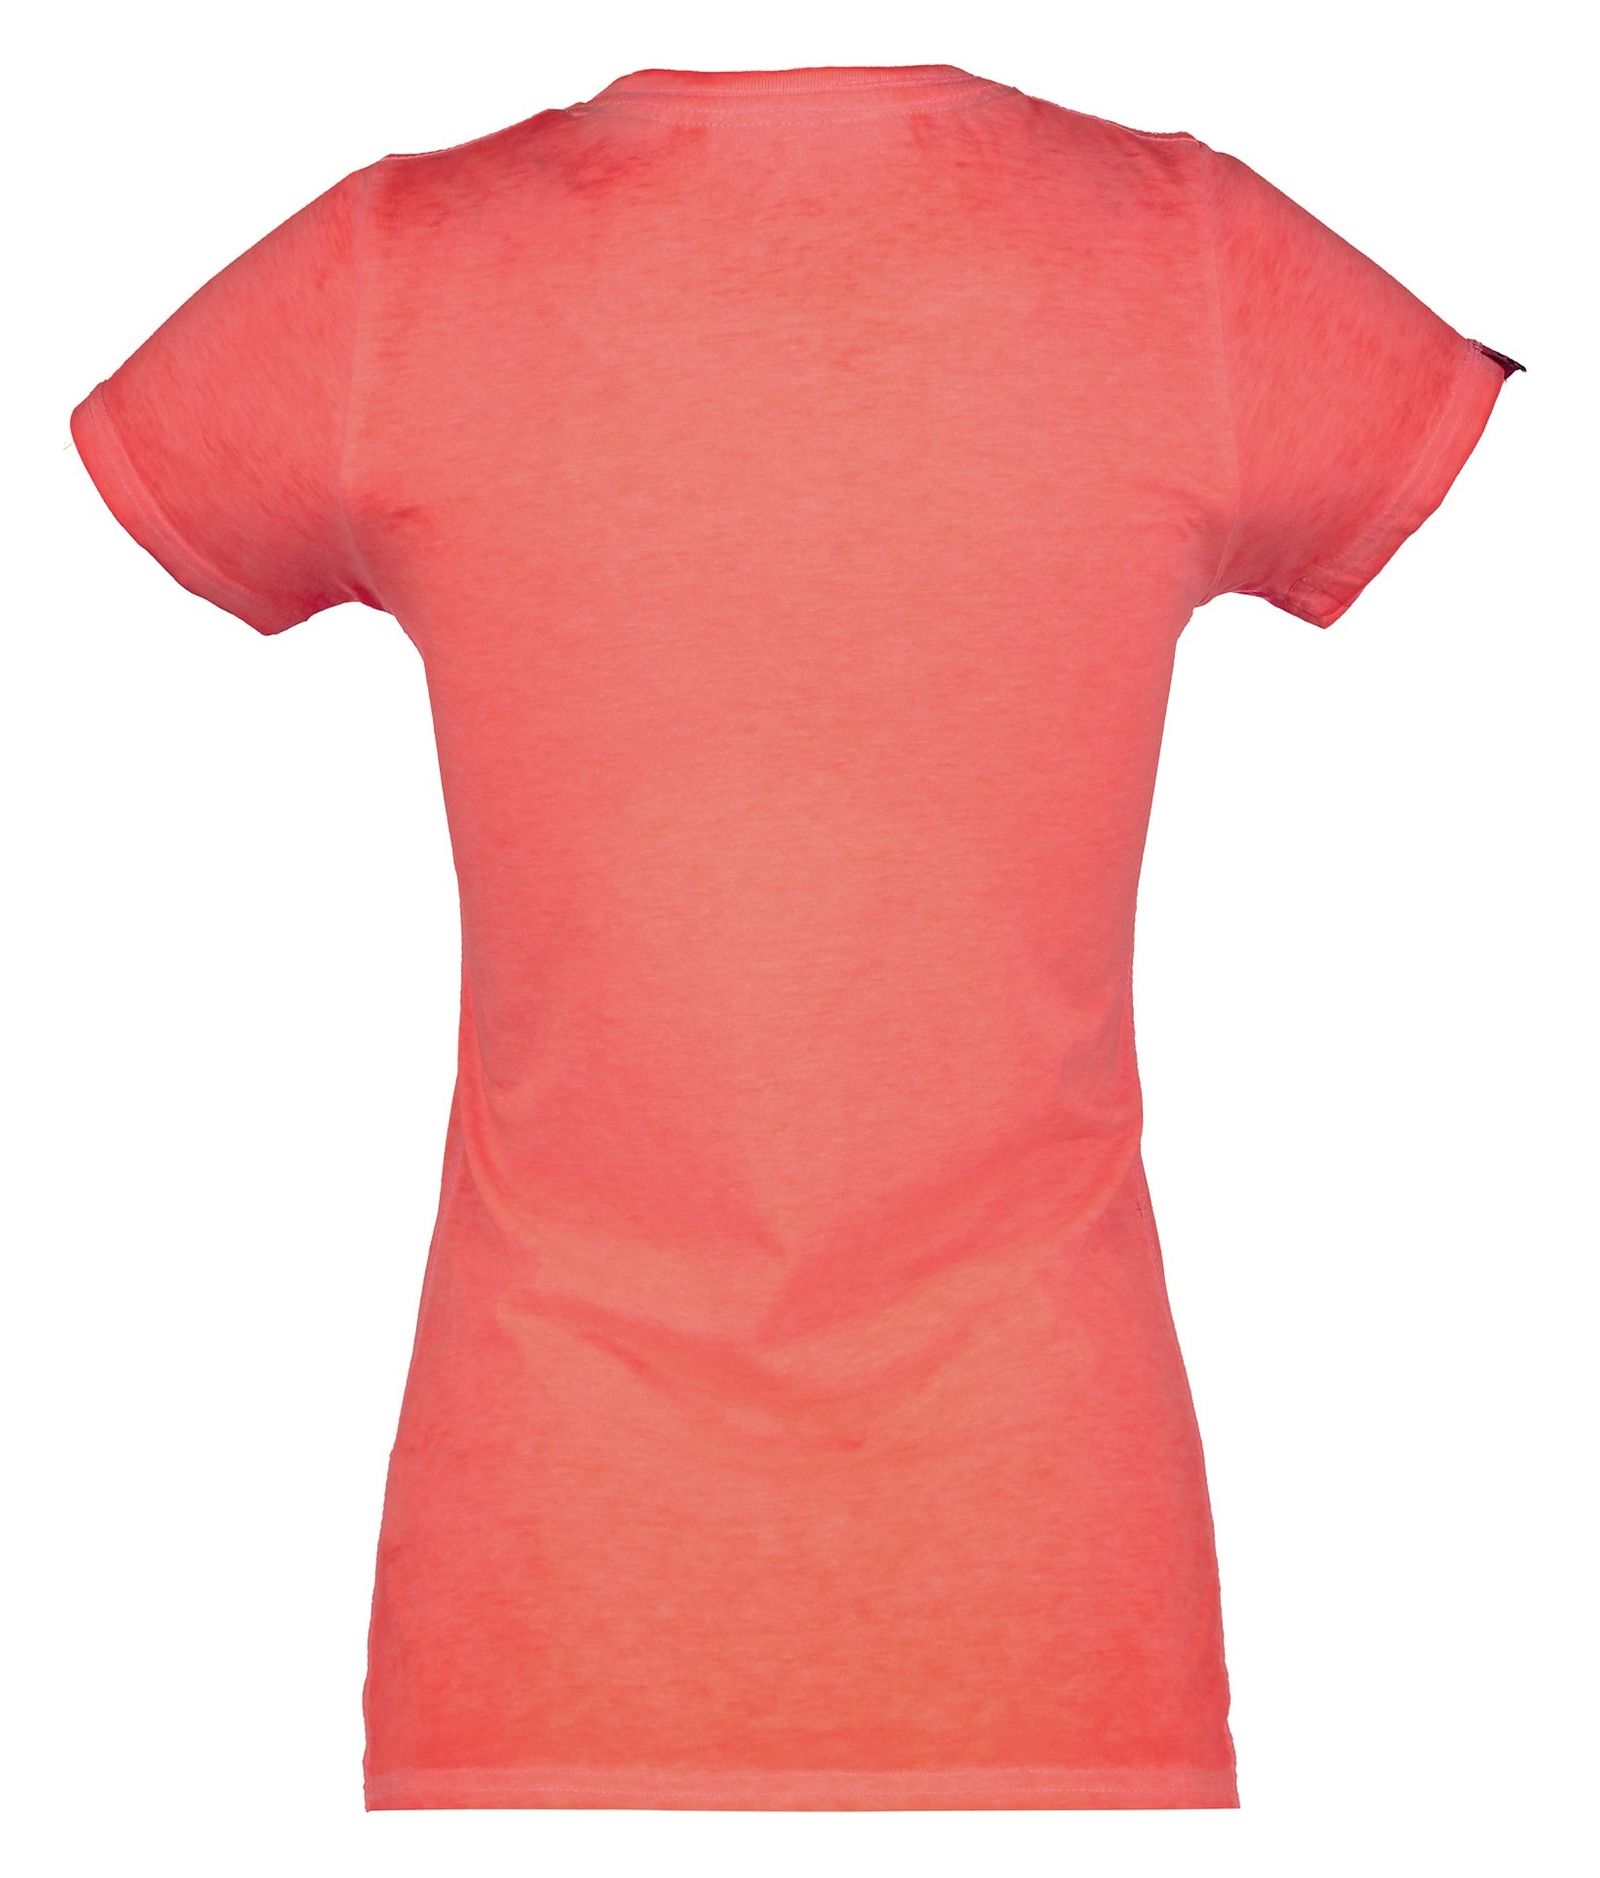 تی شرت نخی یقه گرد زنانه - سوپردرای - نارنجي   - 3